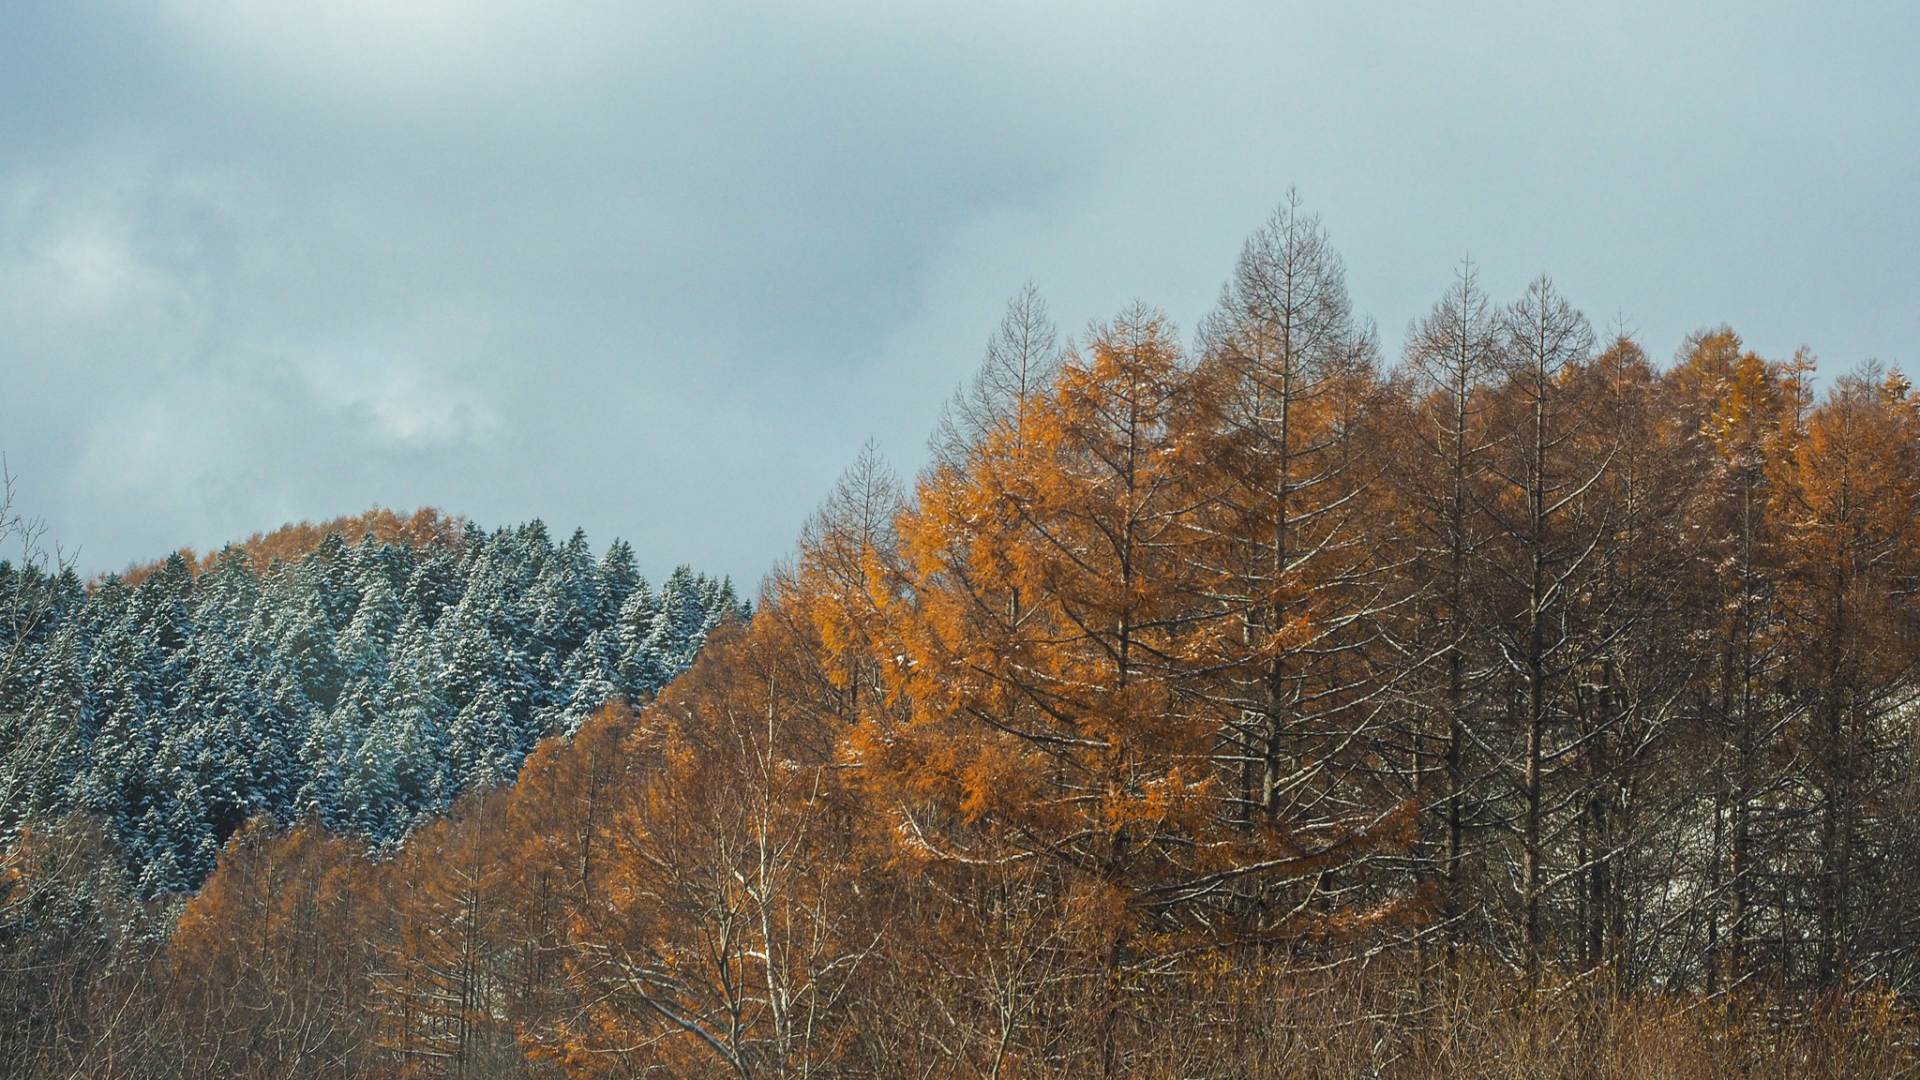 支笏湖に近い美笛峠（国道453号）のカラマツJapanese larch woods on the Route 453 around the Lake Shikotsu